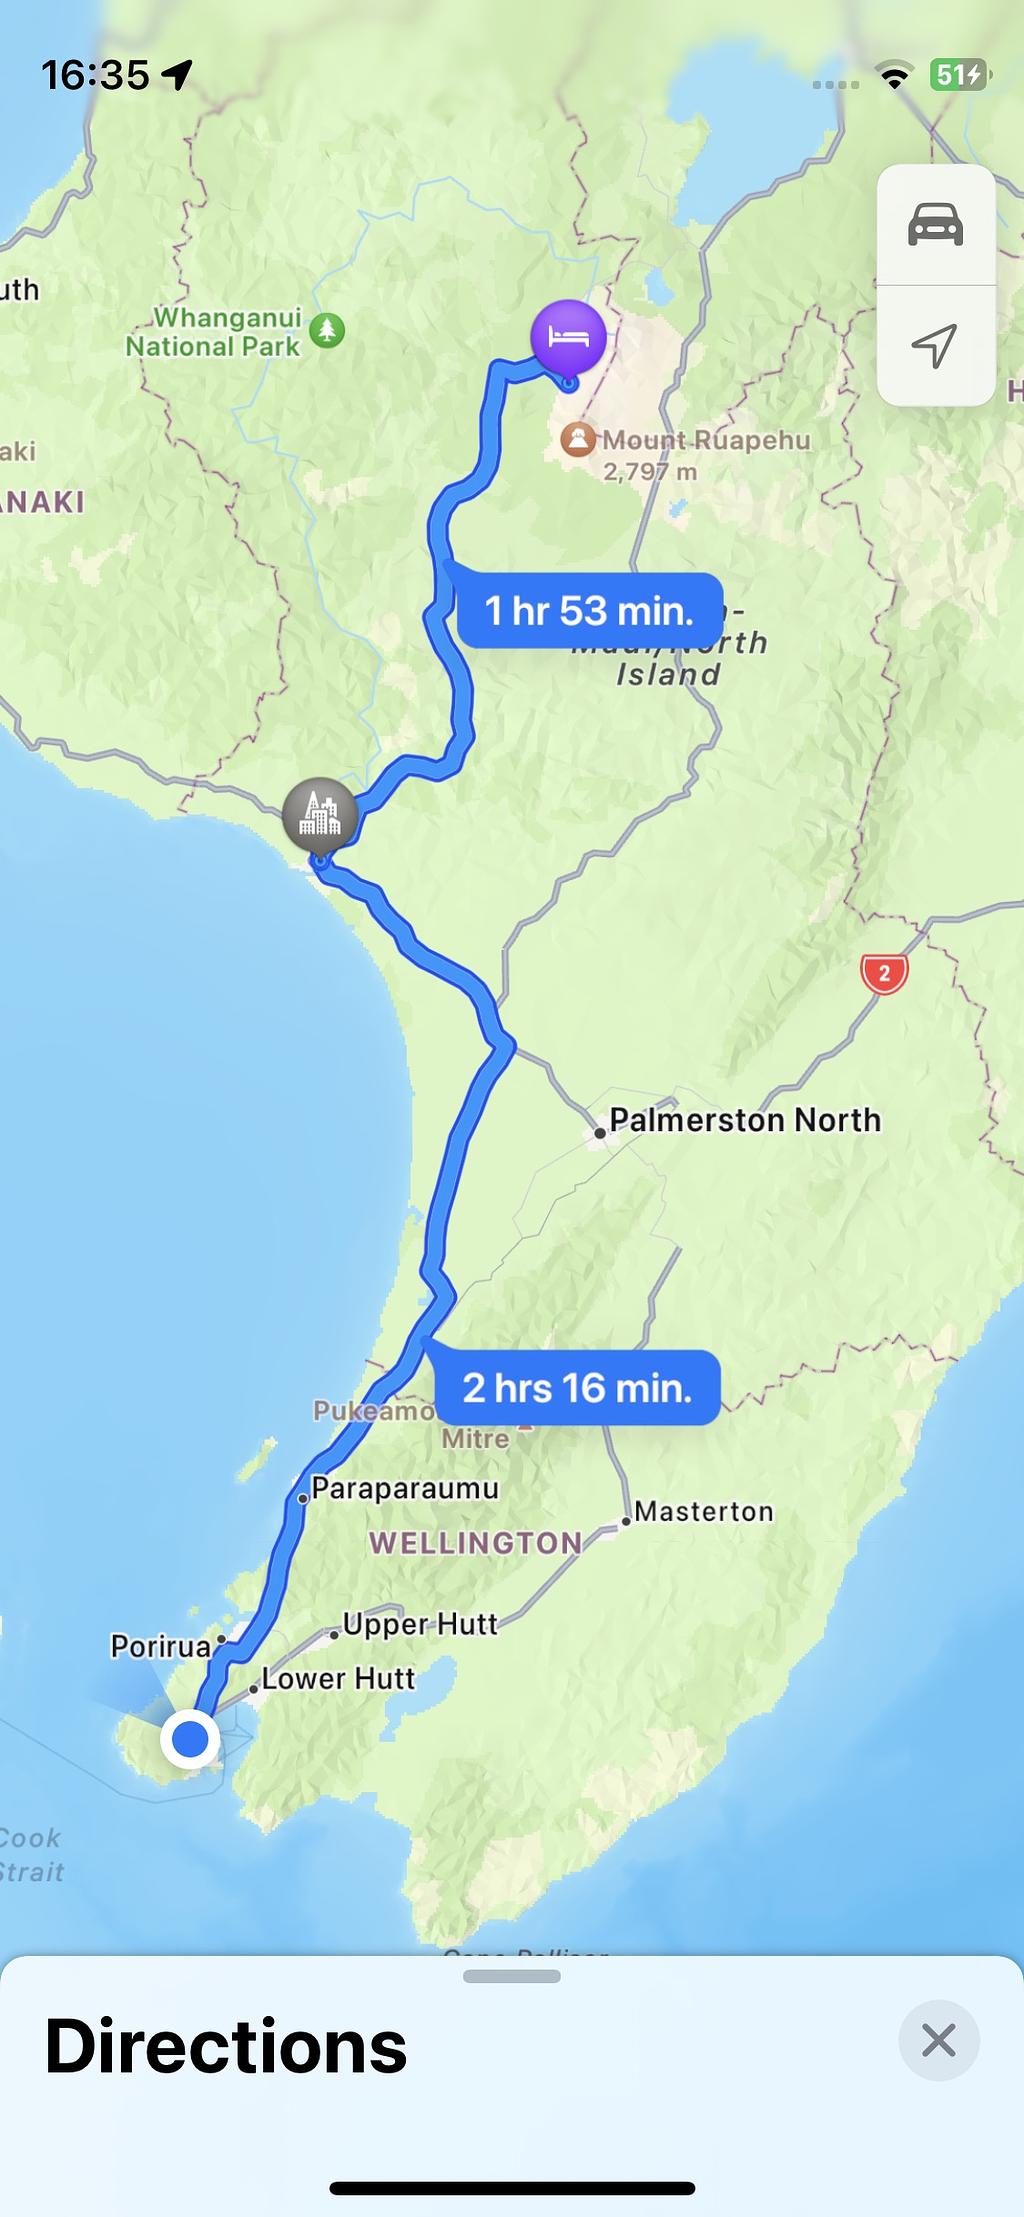 An Apple Maps screenshot showing a route from Tongariro to Wellington via Whanganui